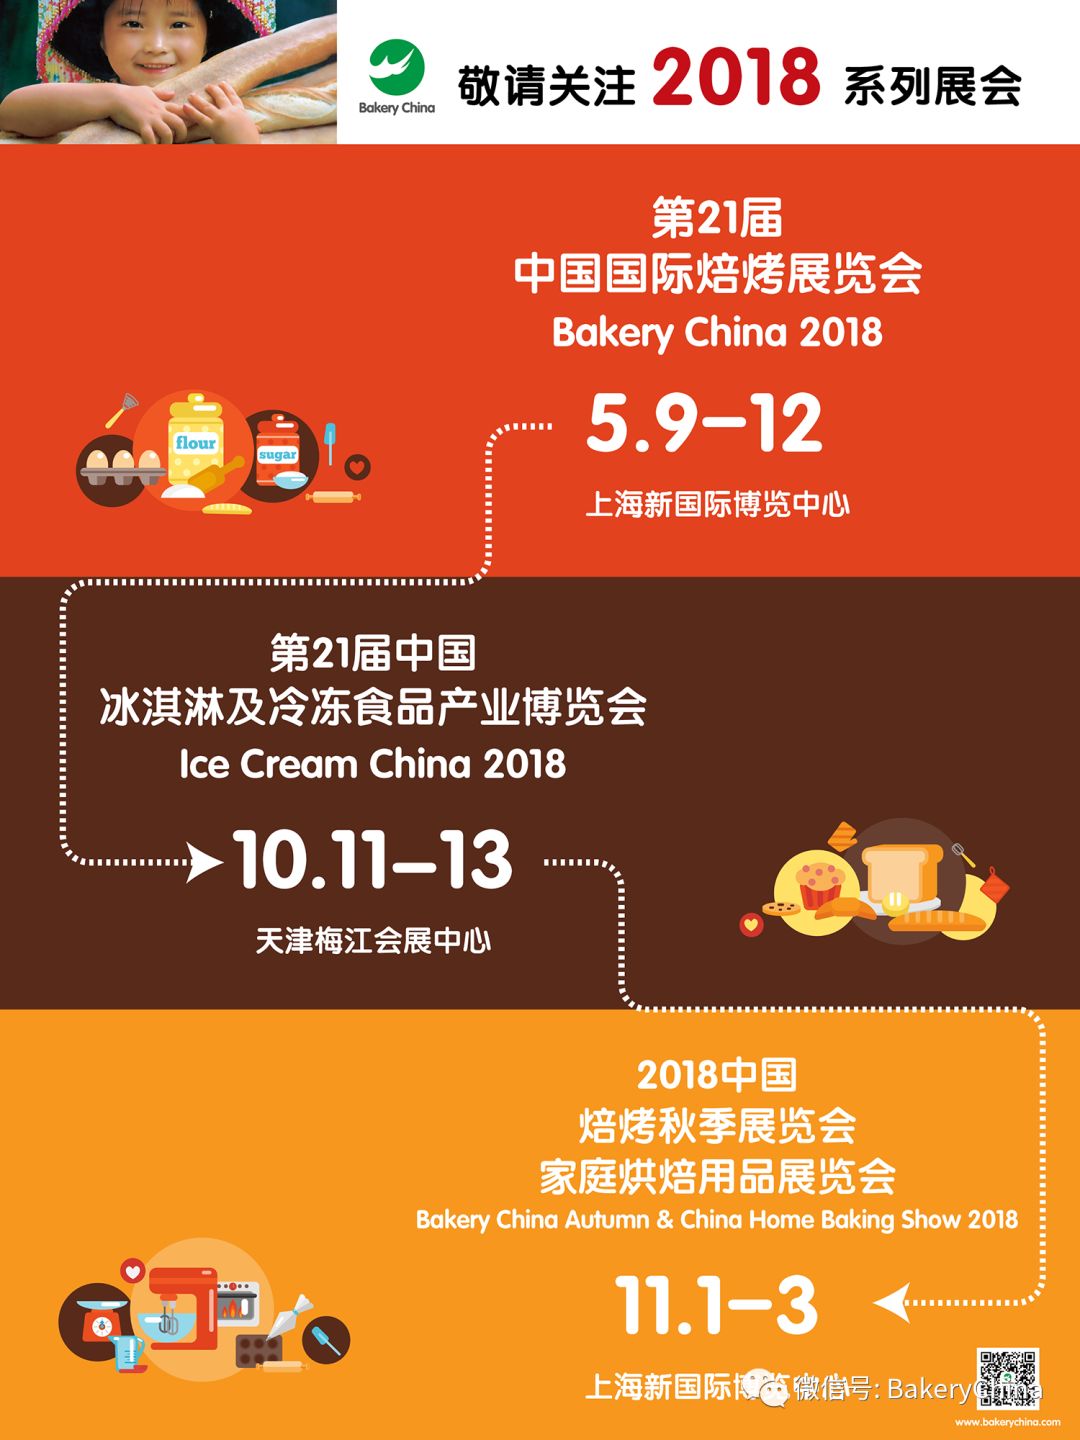 烘焙,焙烤,上海焙烤展,中国国际焙烤展览会BakeryChina,食品展会大全,N2包装馆